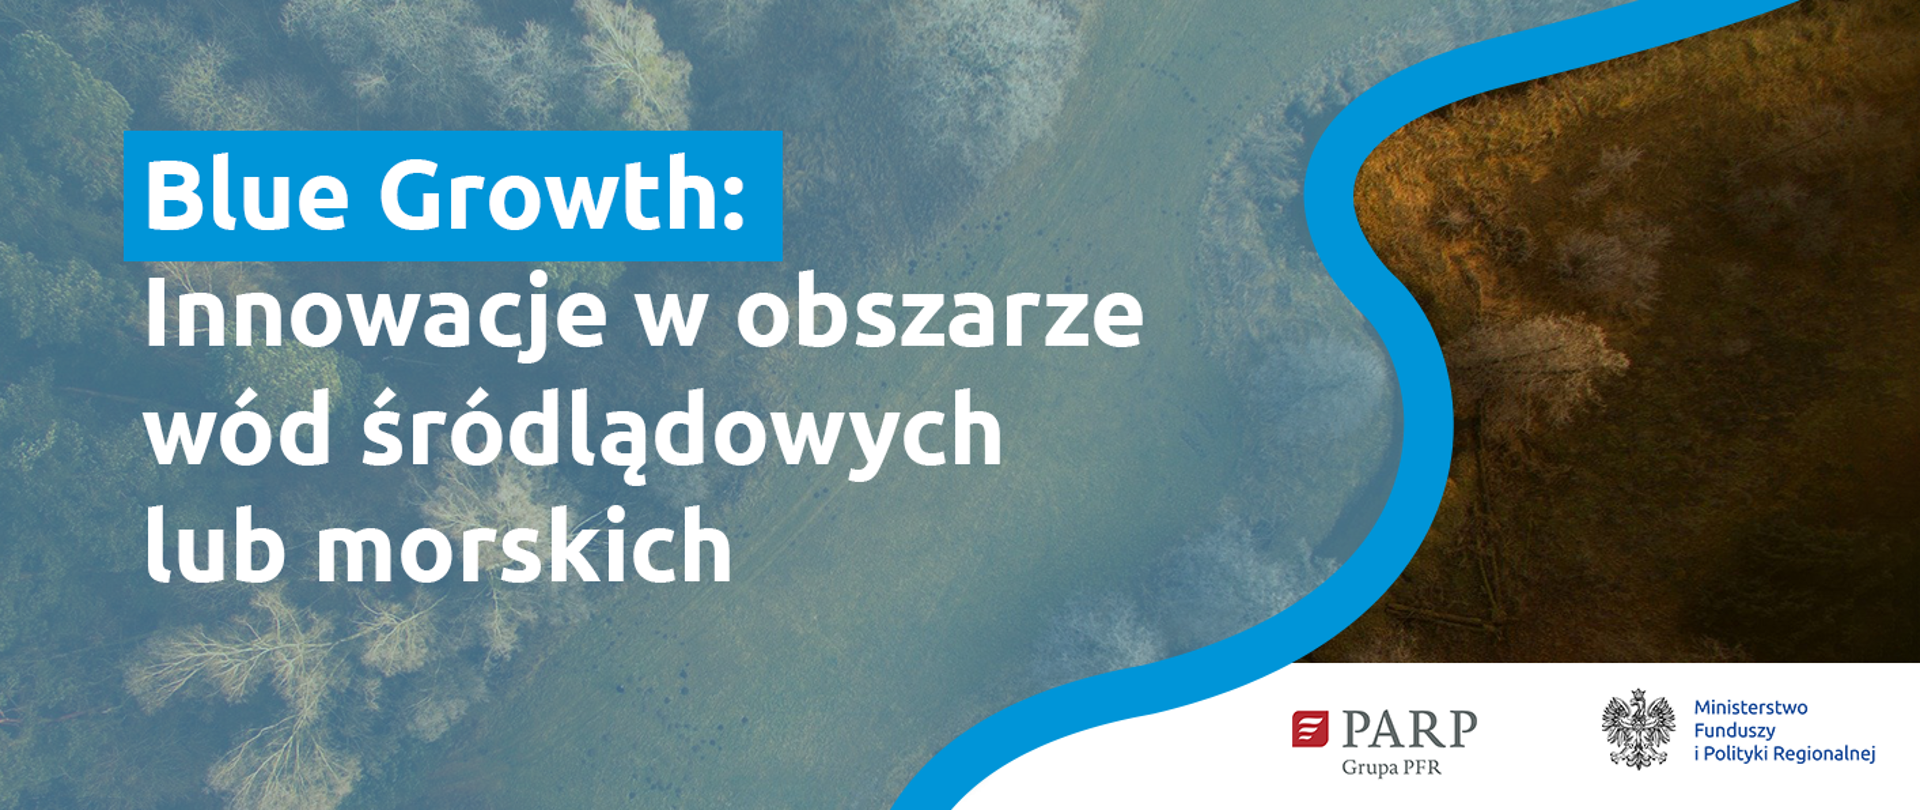 Na grafice zdjęcie natury oraz tekst: Blue Growth: Innowacje w obszarze wód śródlądowych lub morskich. W prawym dolnym rogu logotypy Ministerstwa Funduszy i Polityki Regionalnej oraz Polskiej Agencji Rozwoju Przedsiębiorczości.